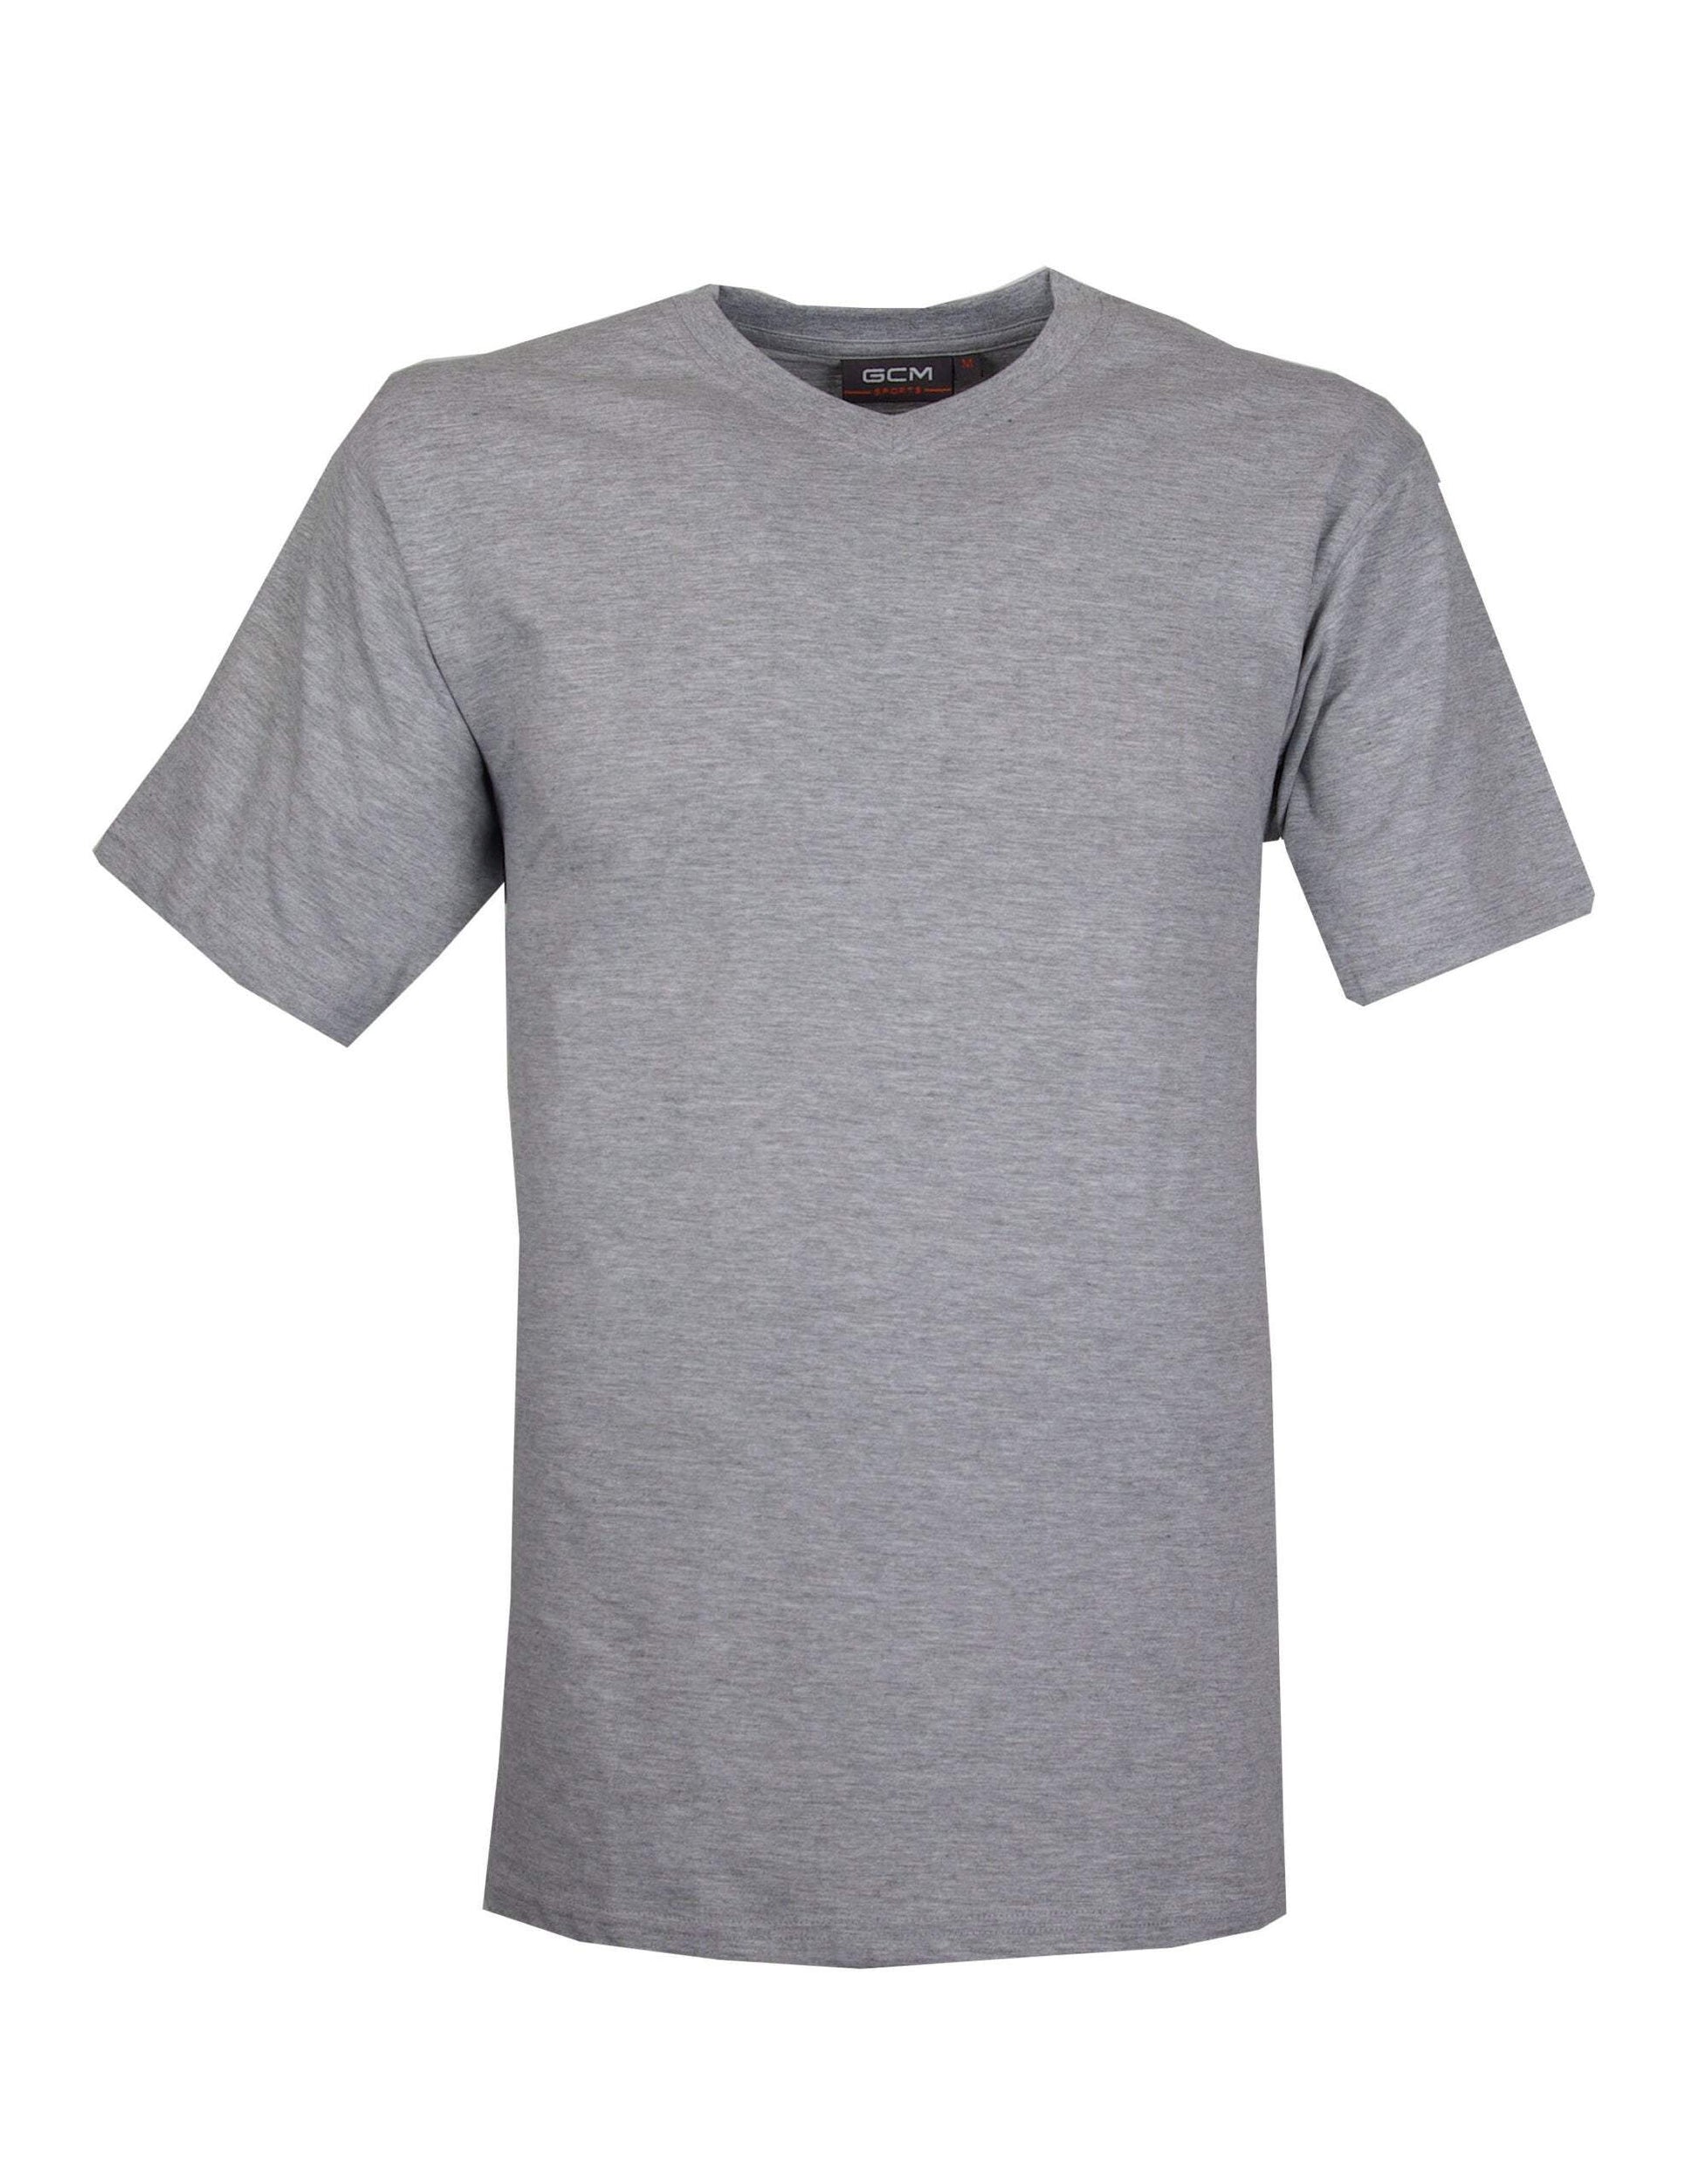 GCM original t-shirt V-hals grijs-Broeken Binkie-Grote maten,grote maten kleding,Grote Maten tops,grote tops,Shirts,V hals